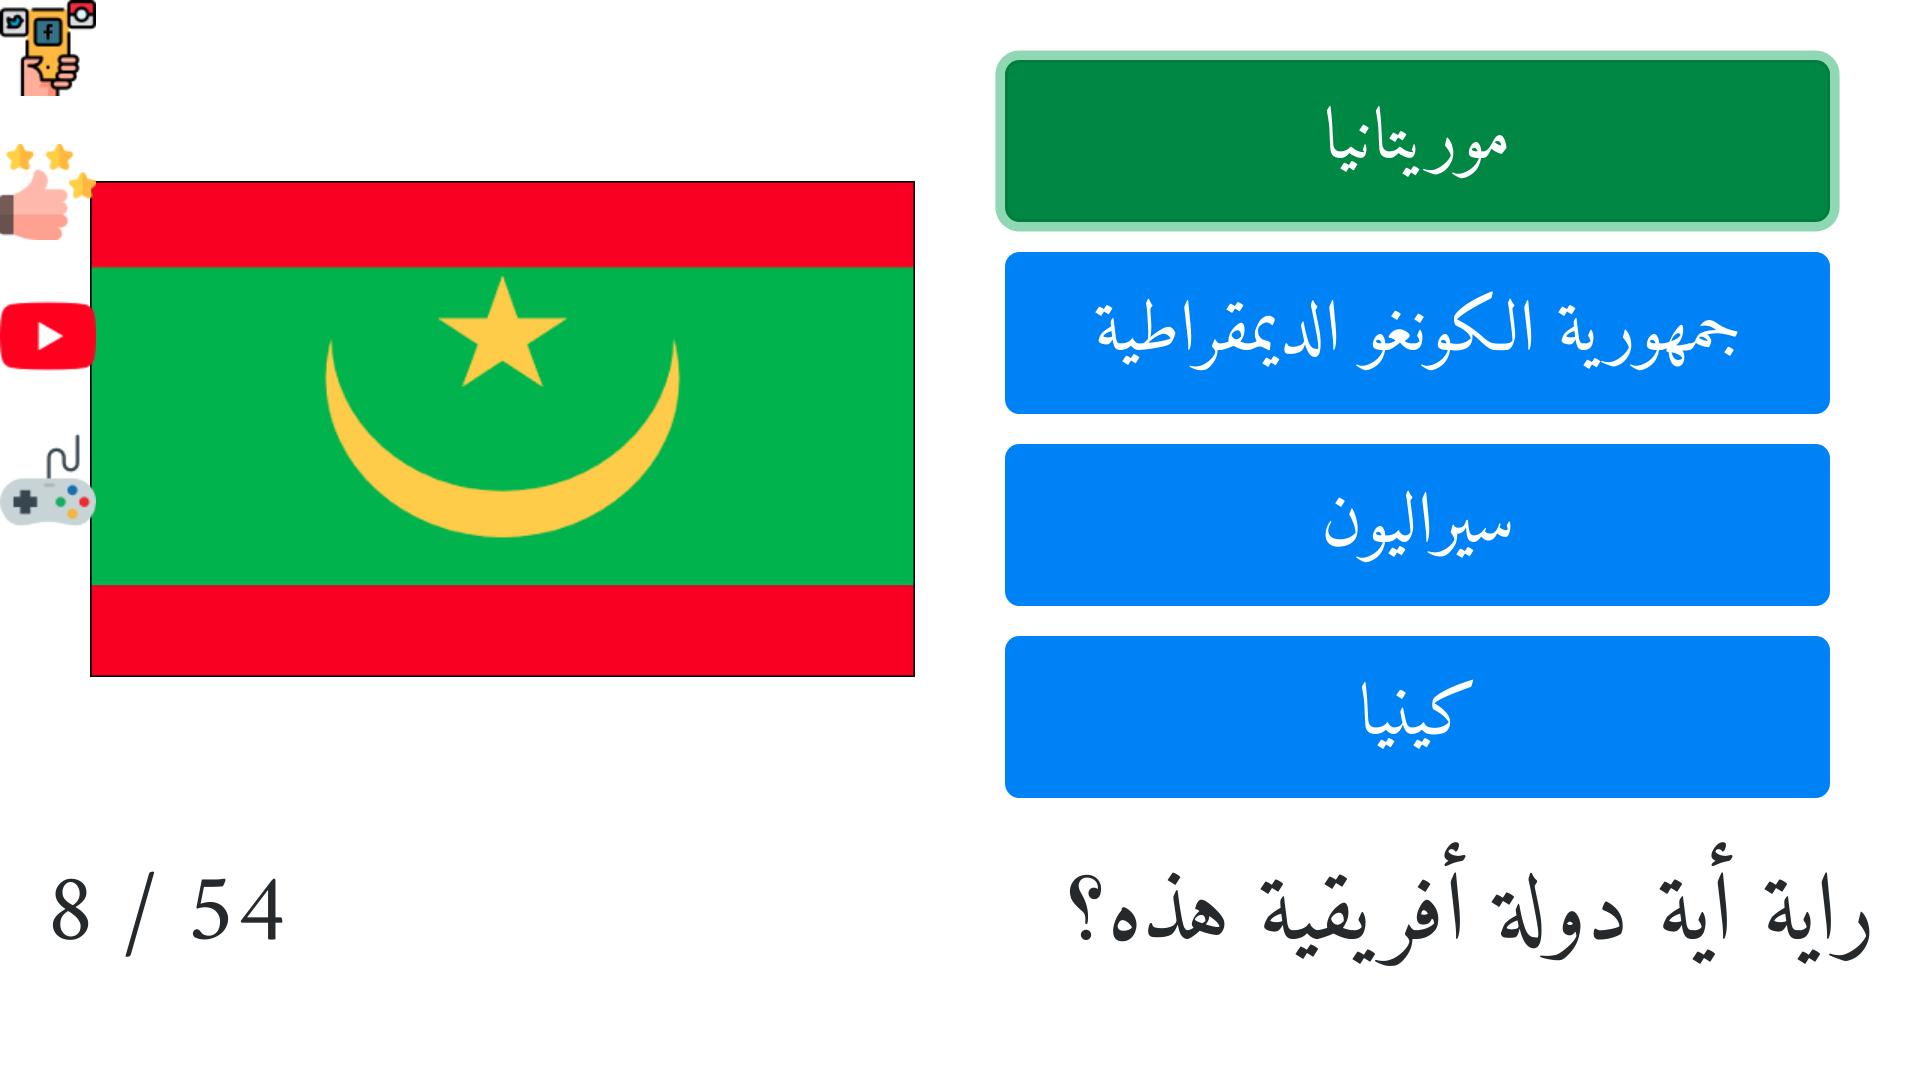 أعلام الدول الأفريقية وأسماؤها بالعربية مع الصور Para Android Apk Baixar